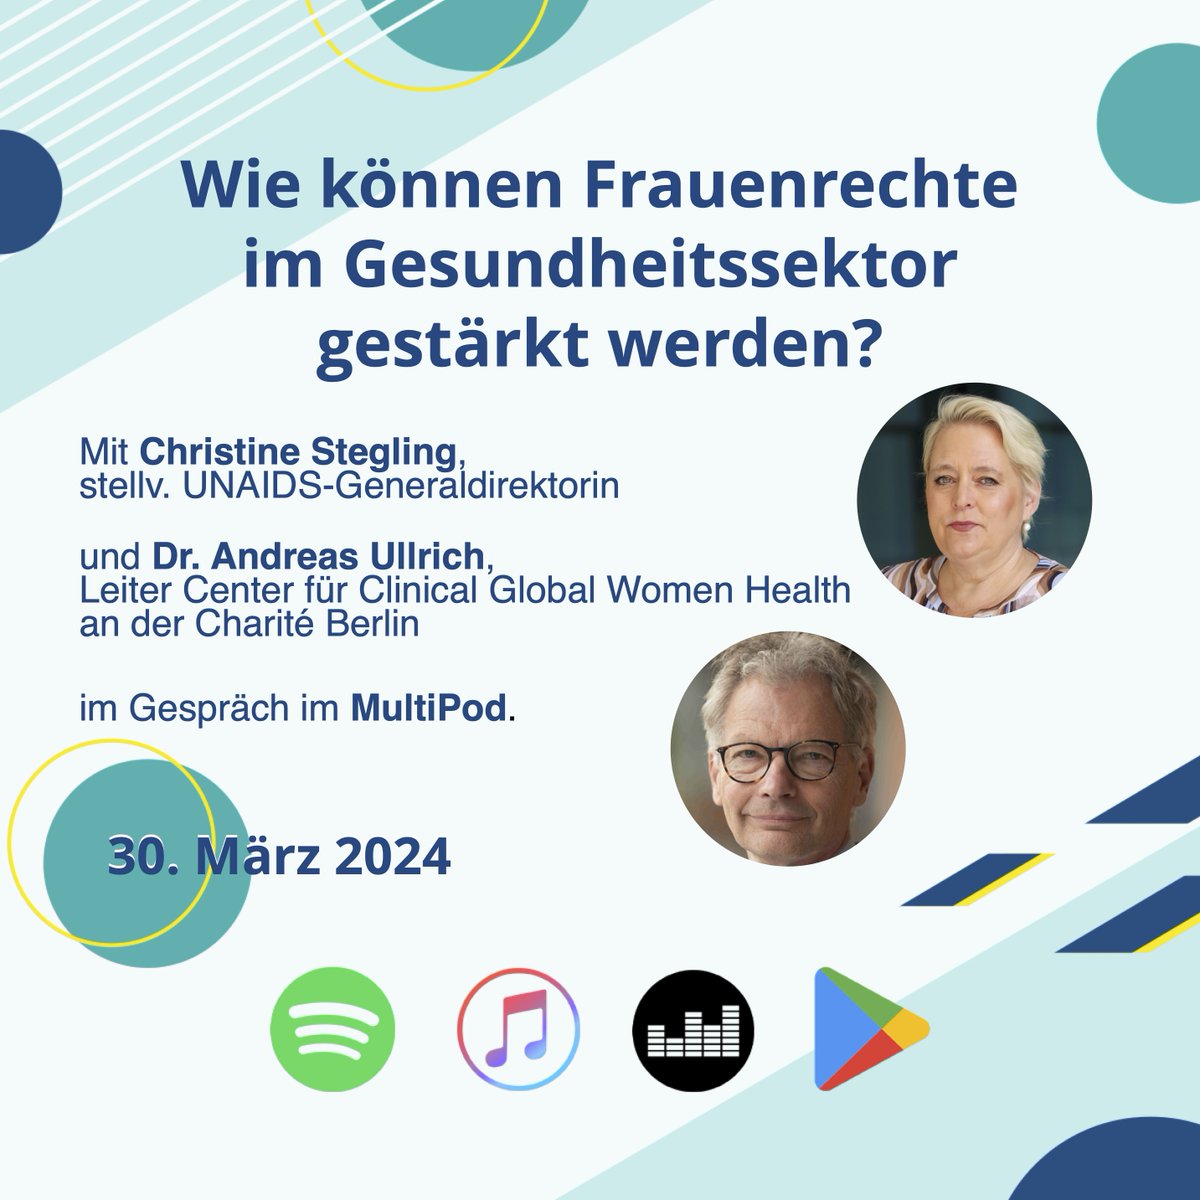 Neuer Podcast @KASonline: Wir diskutieren im #KASMultipod die Stärkung von Frauenrechten im Gesundheitssektor. Christine Stegling @SteglingC von @UNAIDS und Dr. Andreas Ullrich von @ChariteBerlin teilen ihre Einblicke. Jetzt reinhören! #FrauenGesundheit👉rb.gy/ilqyp7